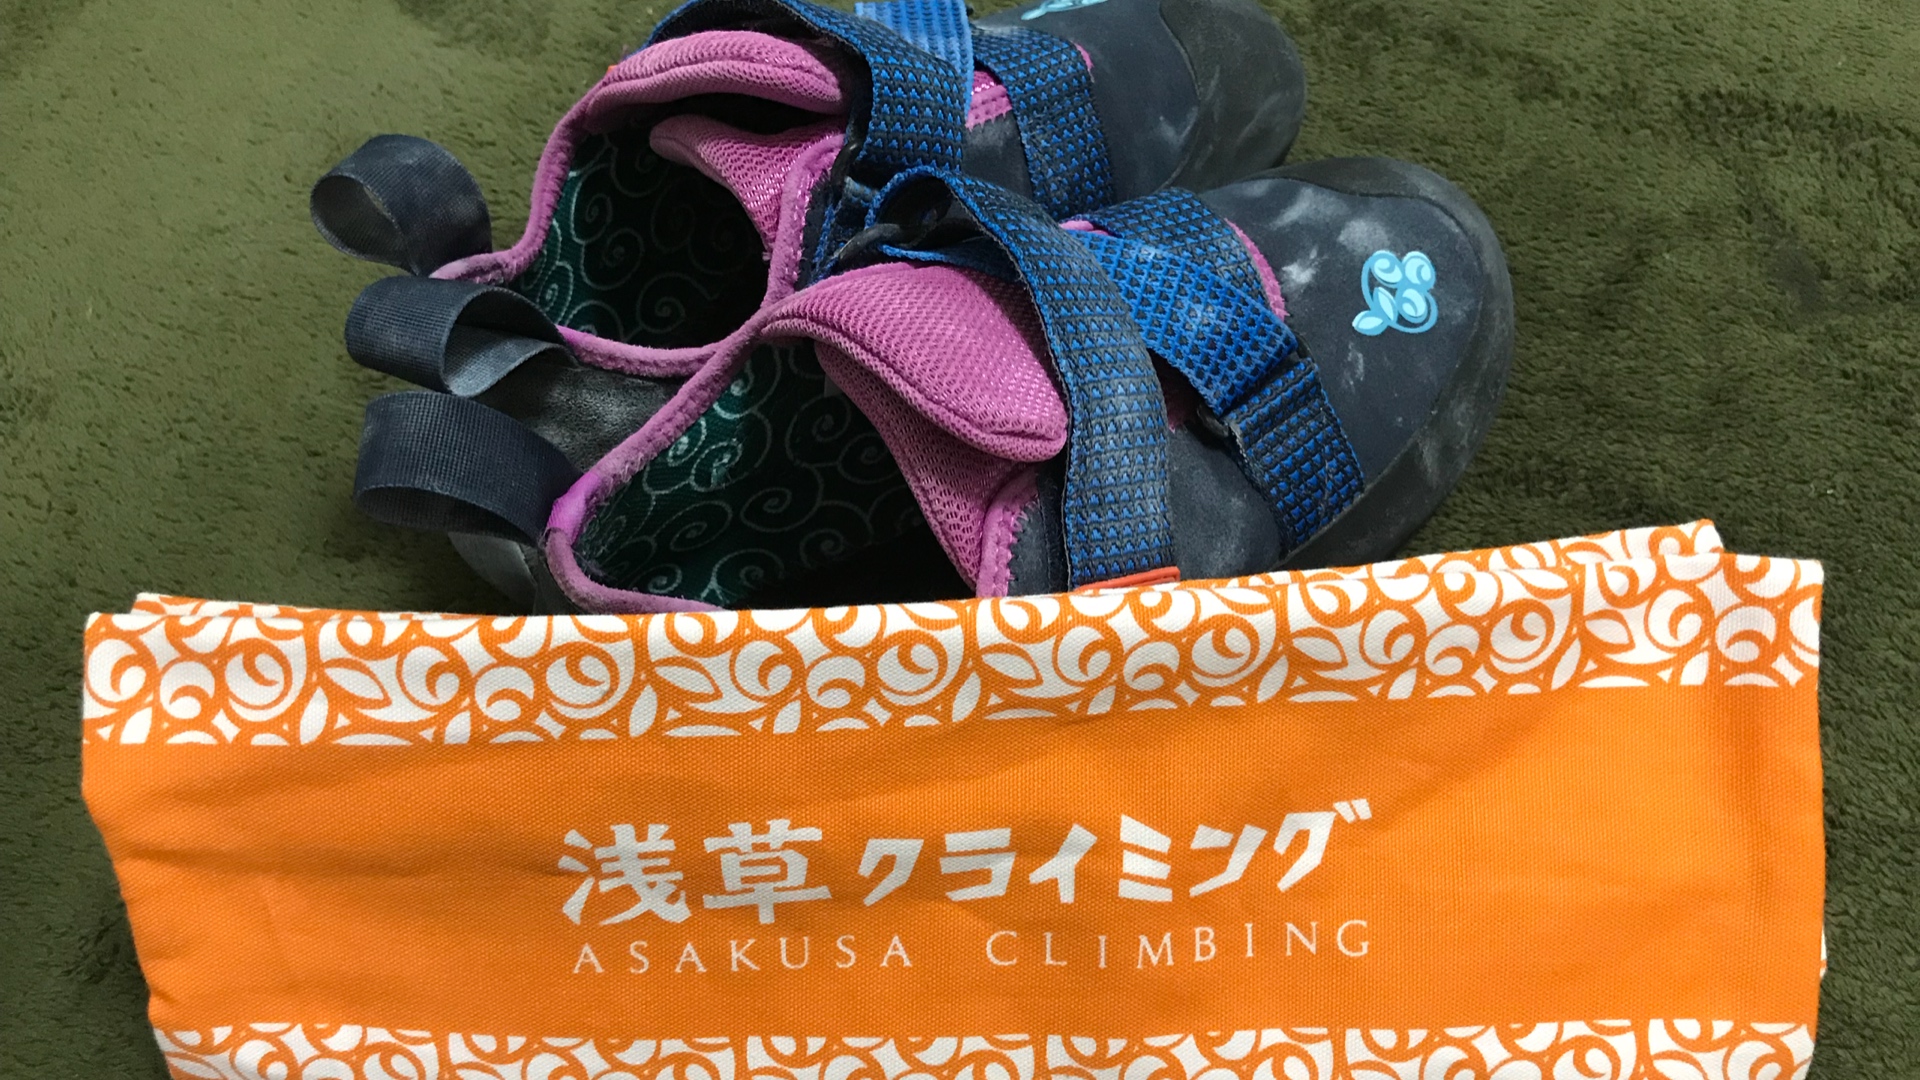 鏡（kagami）:シューズとシューズ袋